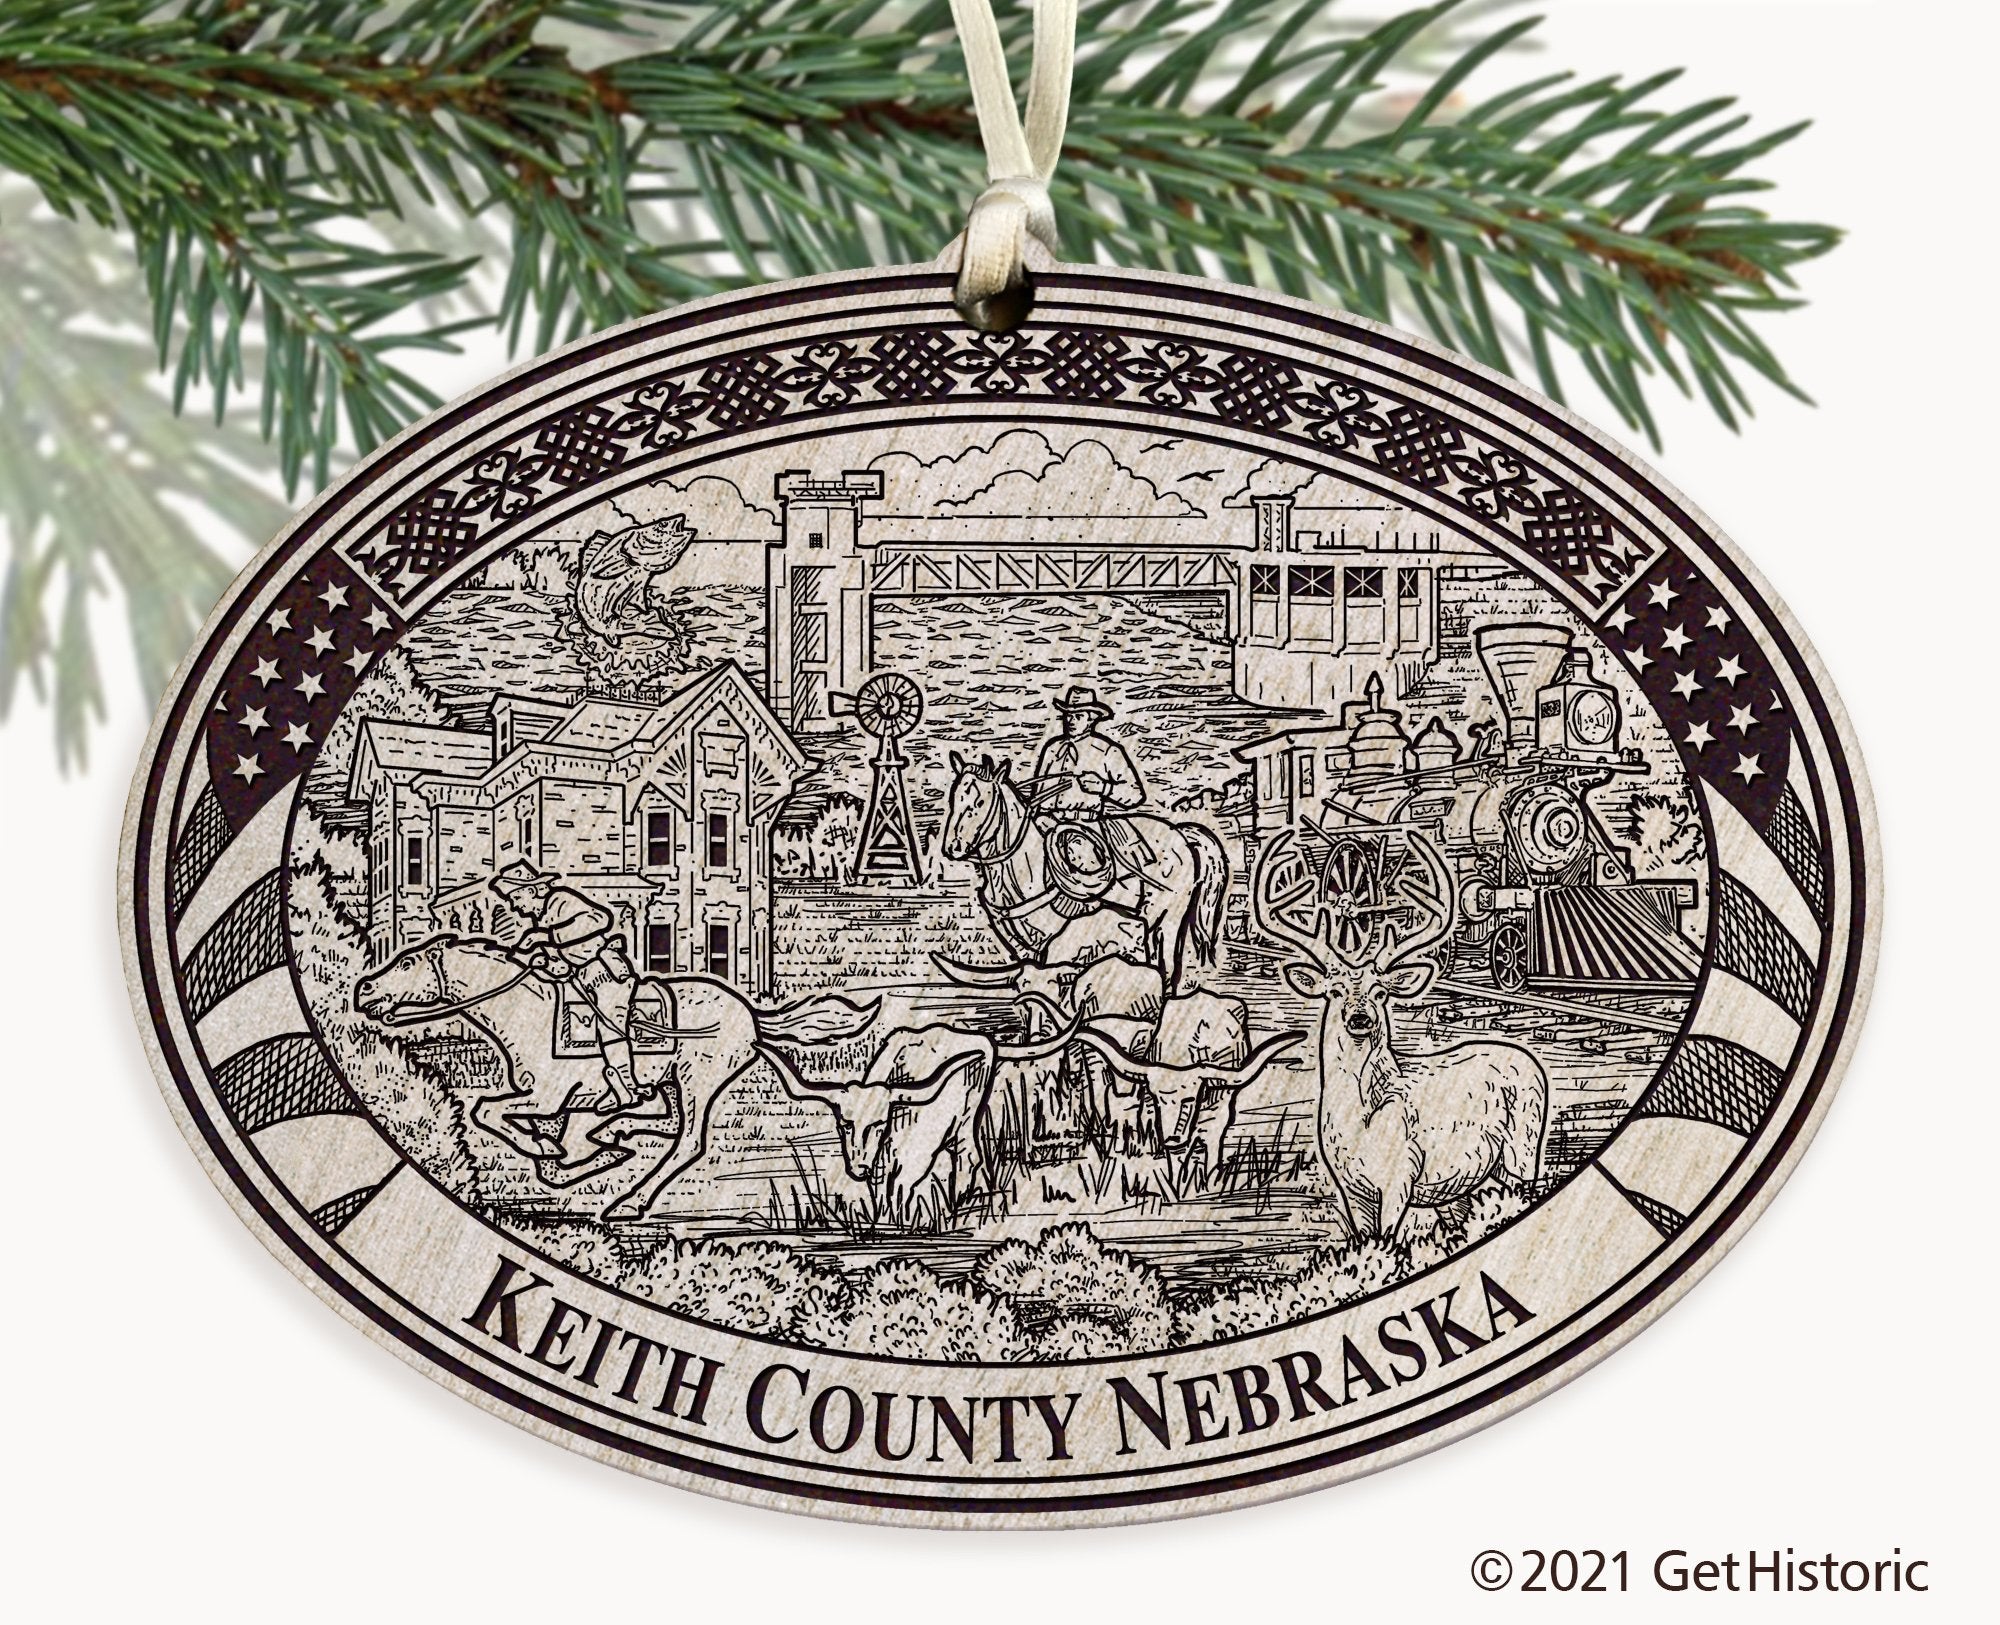 Keith County Nebraska Engraved Ornament